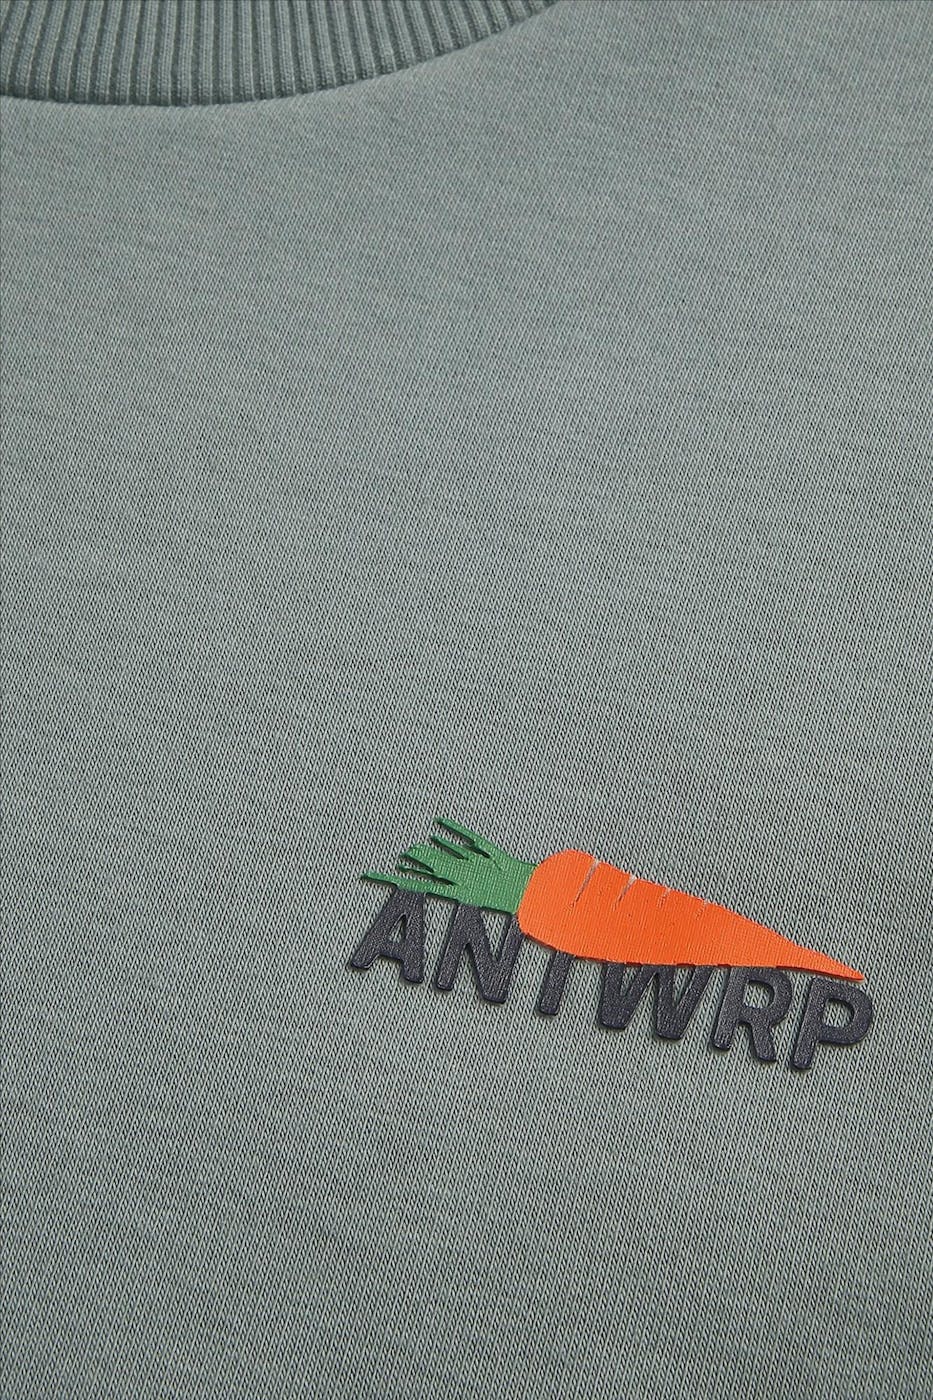 Antwrp - Groene Wortel sweater